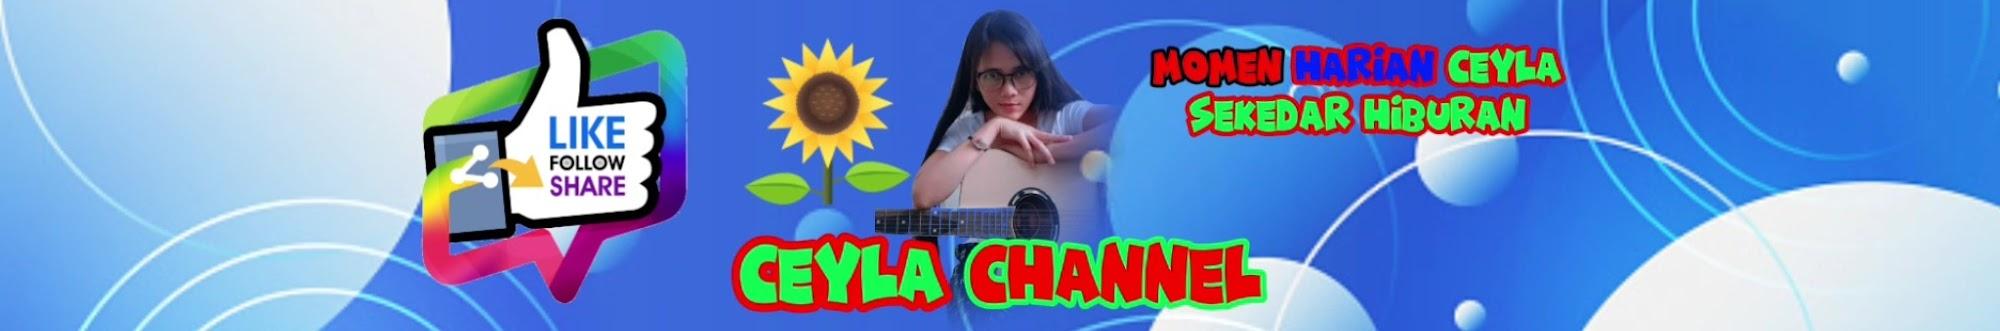 Ceyla channel